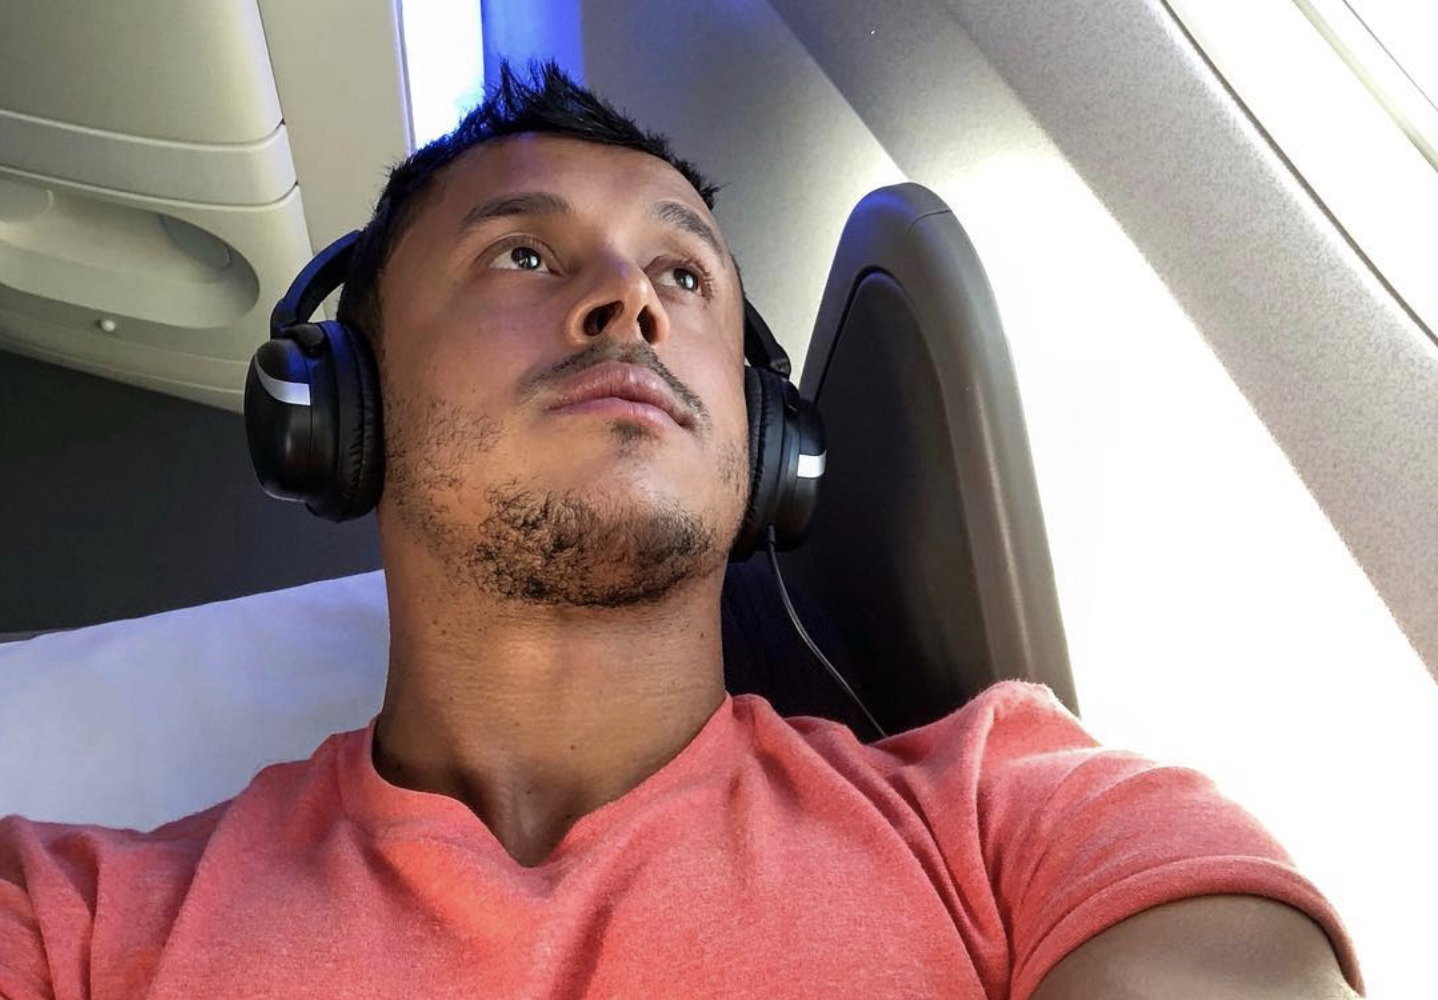 Plane Masturbation - OMG: Social Media Star Filmed Himself Masturbating Onboard ...